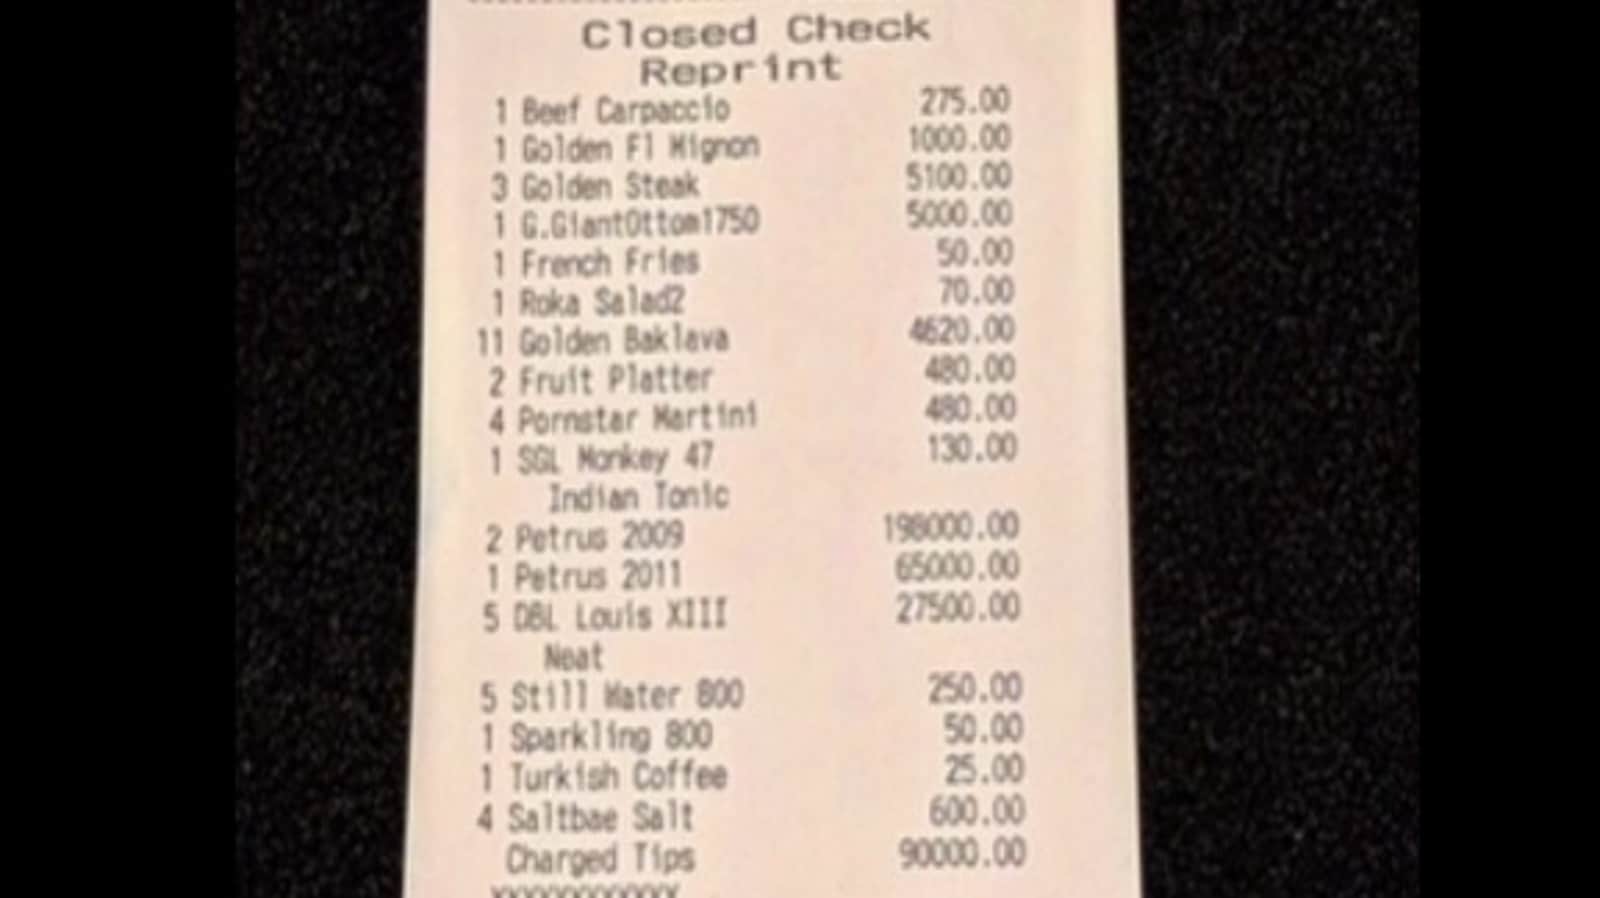 Diners pay over ₹20 lakh in tips at Salt Bae's Dubai restaurant, netizens baffled